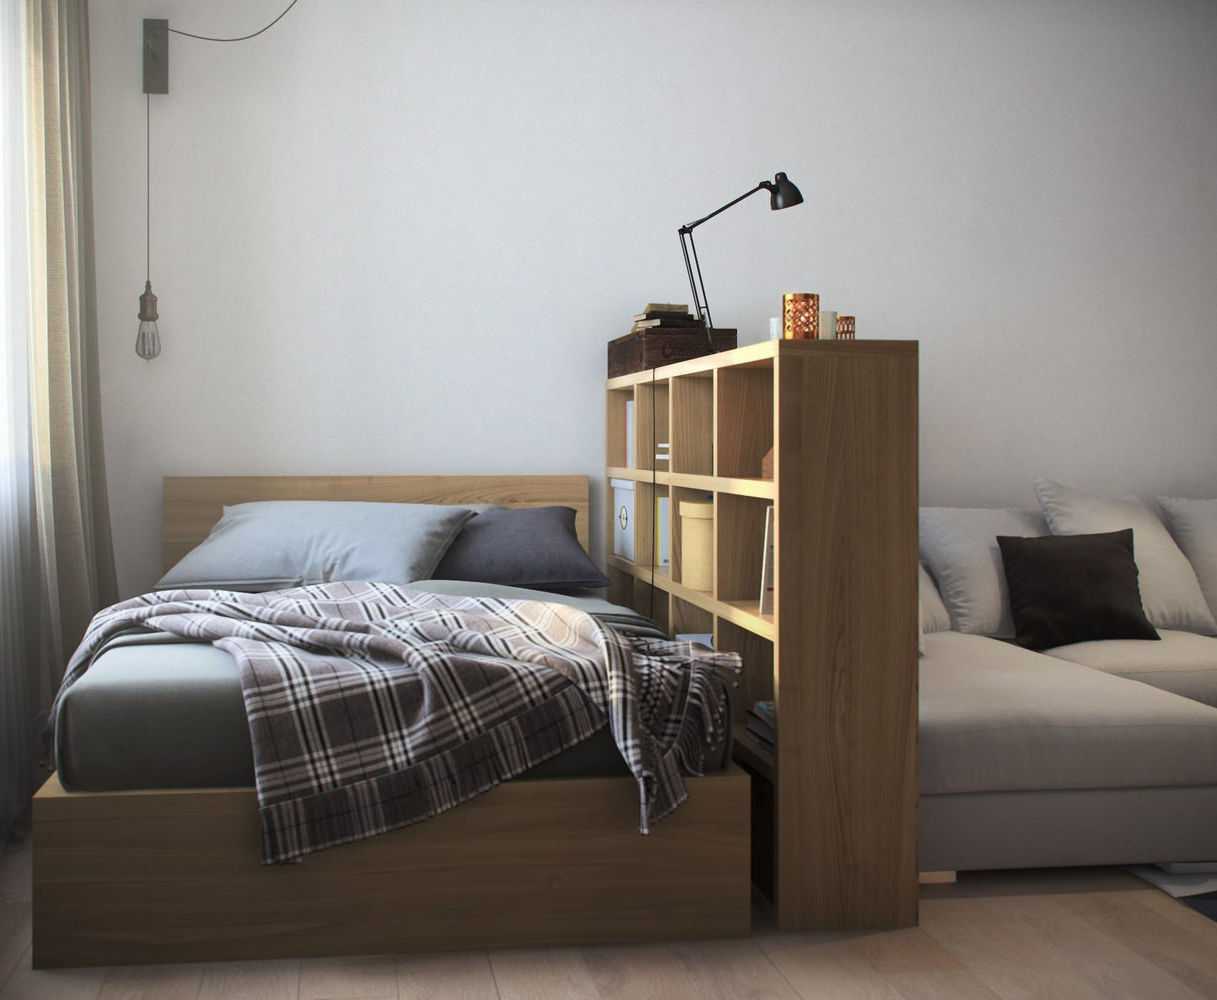 Спальни икеа - идеи для компактных и просторных спален. 170 фото самых стильных и красивых решений